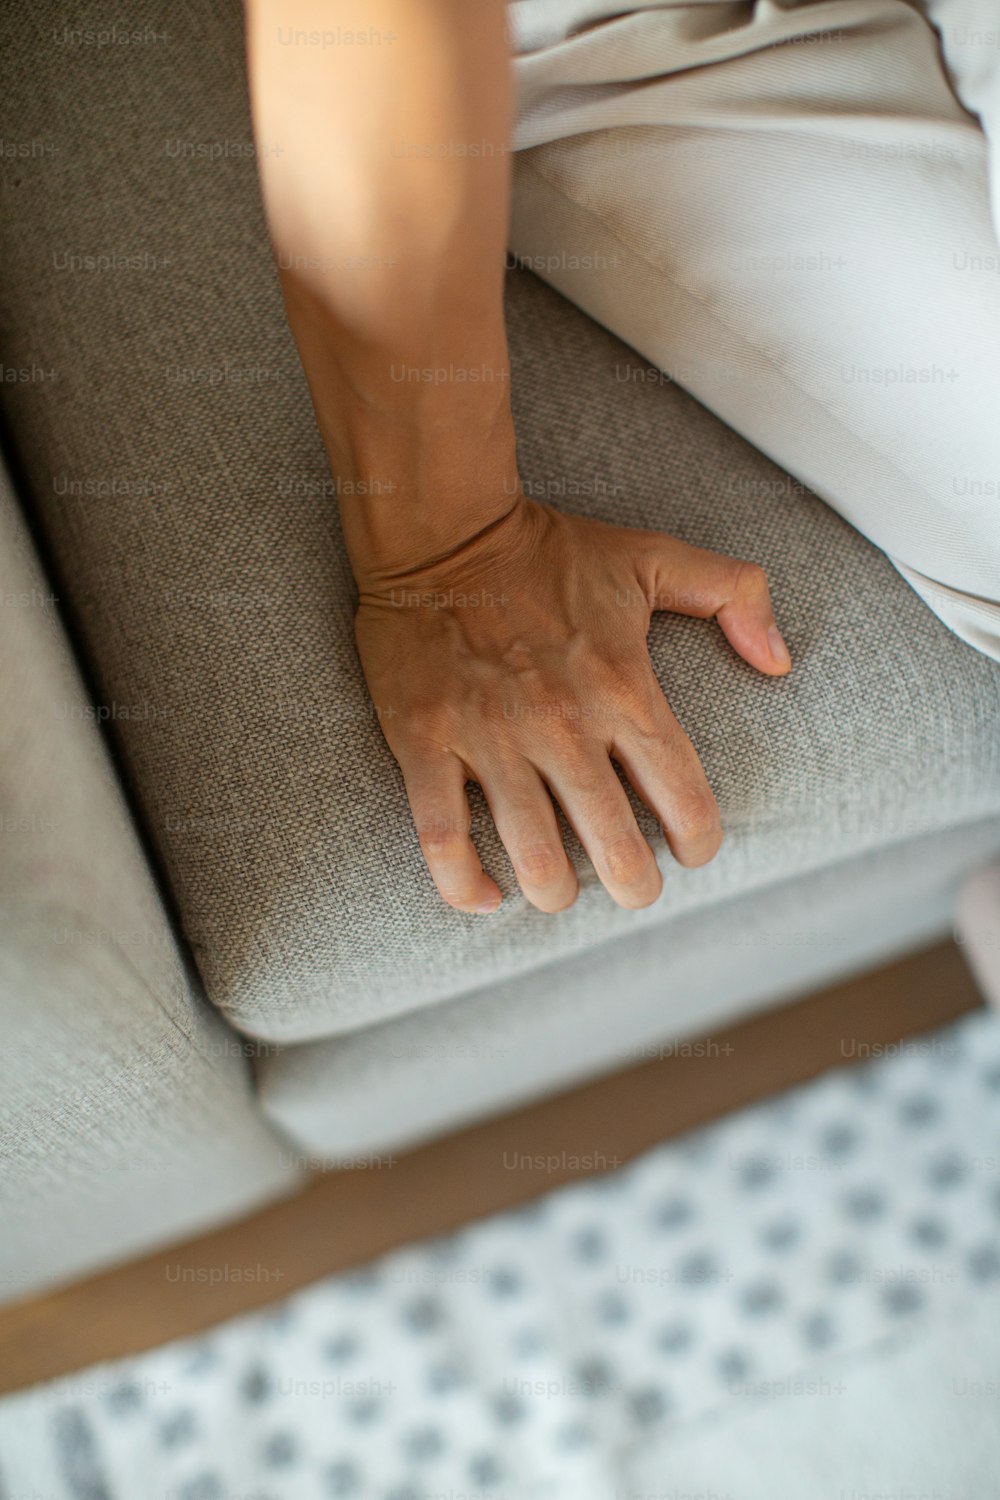 una persona seduta su un divano con la mano sullo schienale del divano